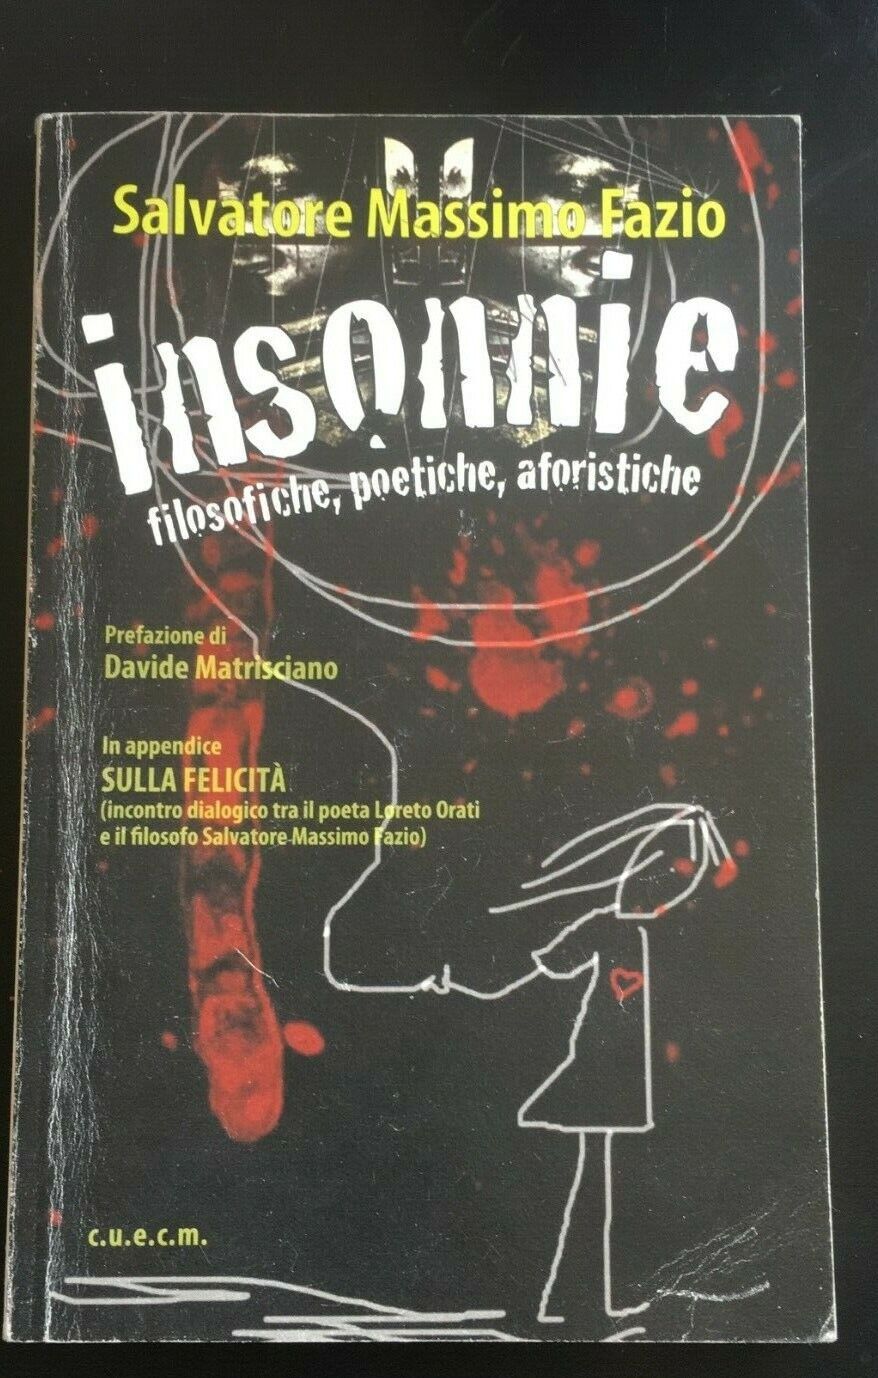 Insonnie - Filosofiche poetiche aforistiche - Salvatore M. Fazio,  2011 - P